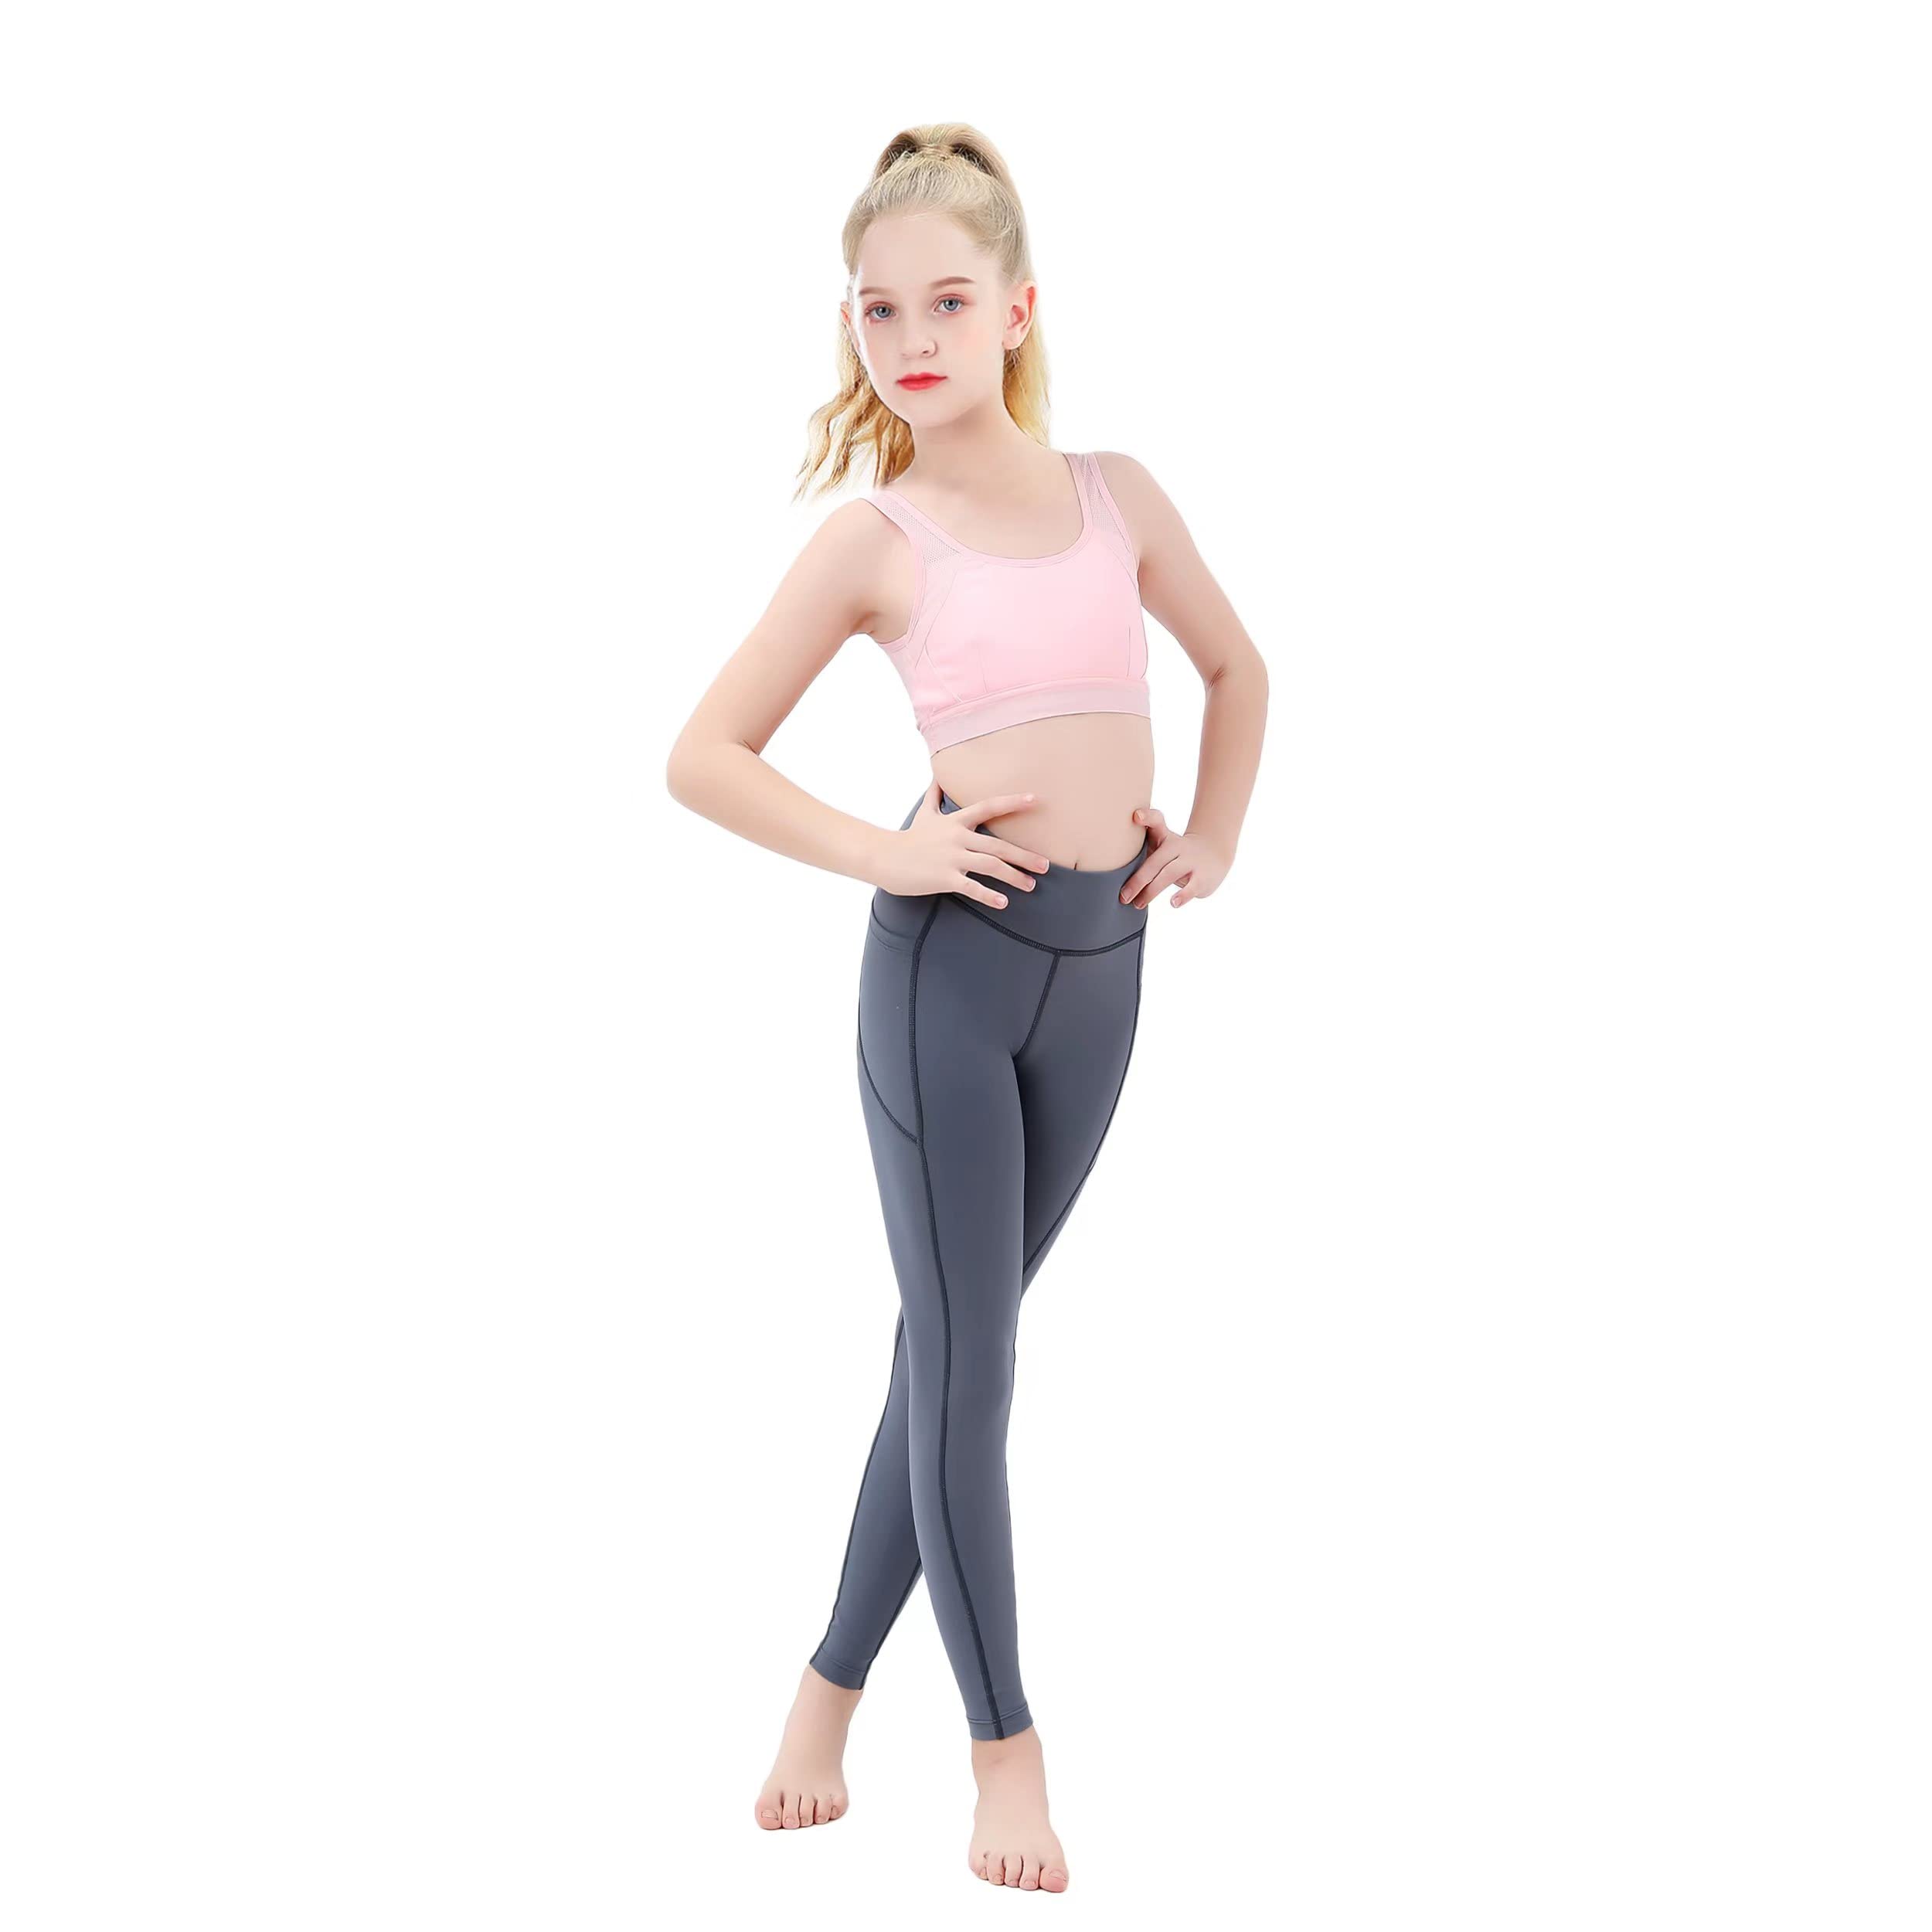 Buy JIM LEAGUE Girls Athletic Leggings - Kids Yoga Dance